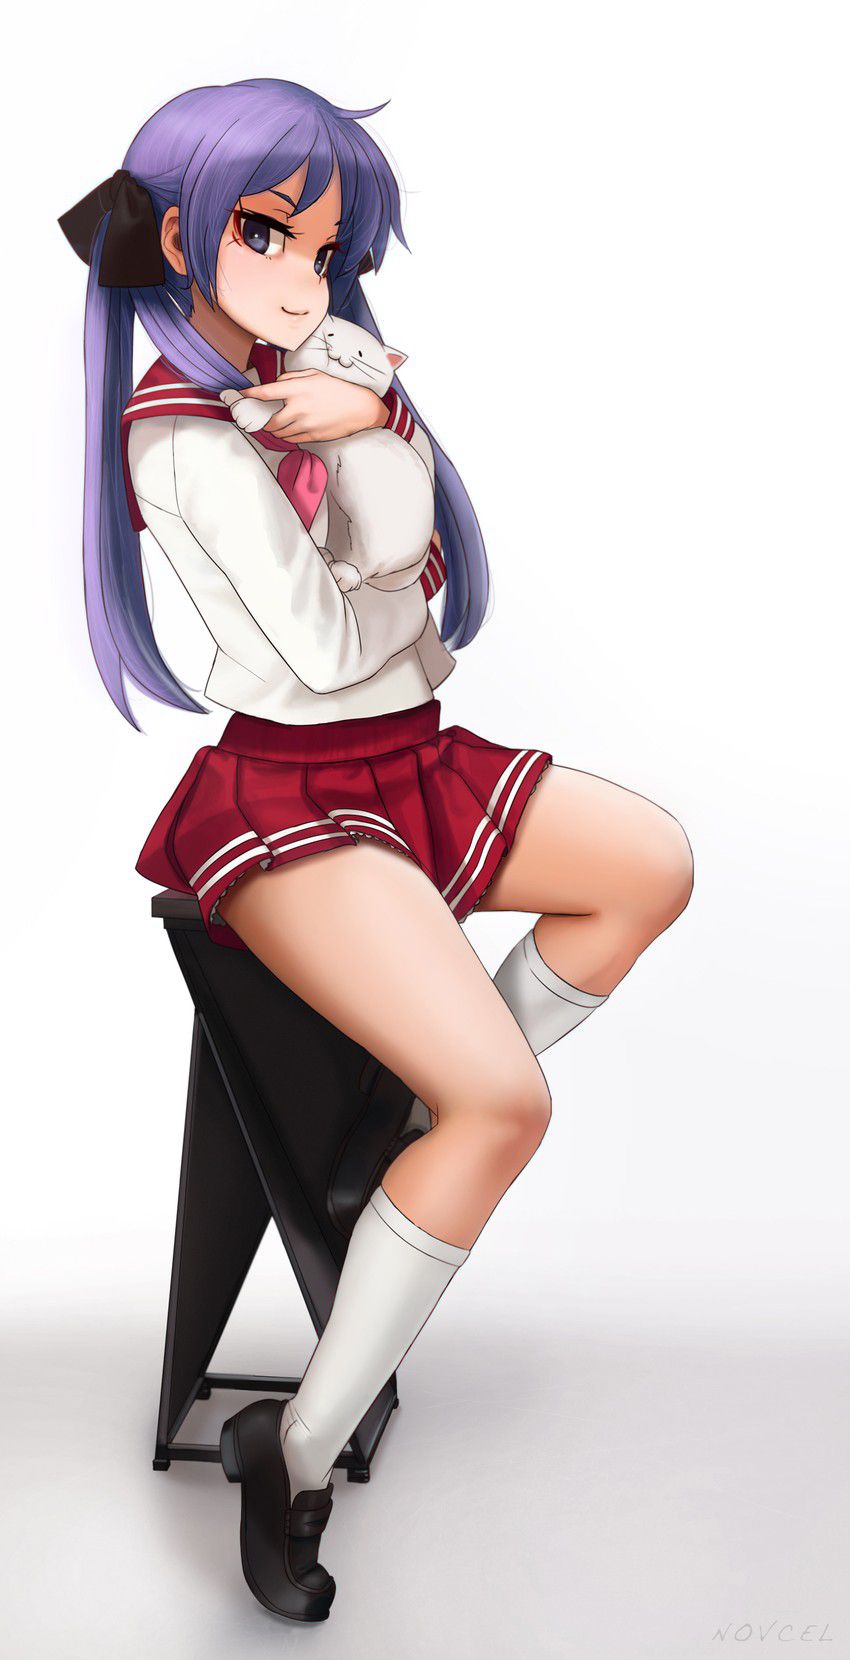 【2D】Speaking of school uniforms, sailor uniforms! Erotic images of cute schoolgirls 36